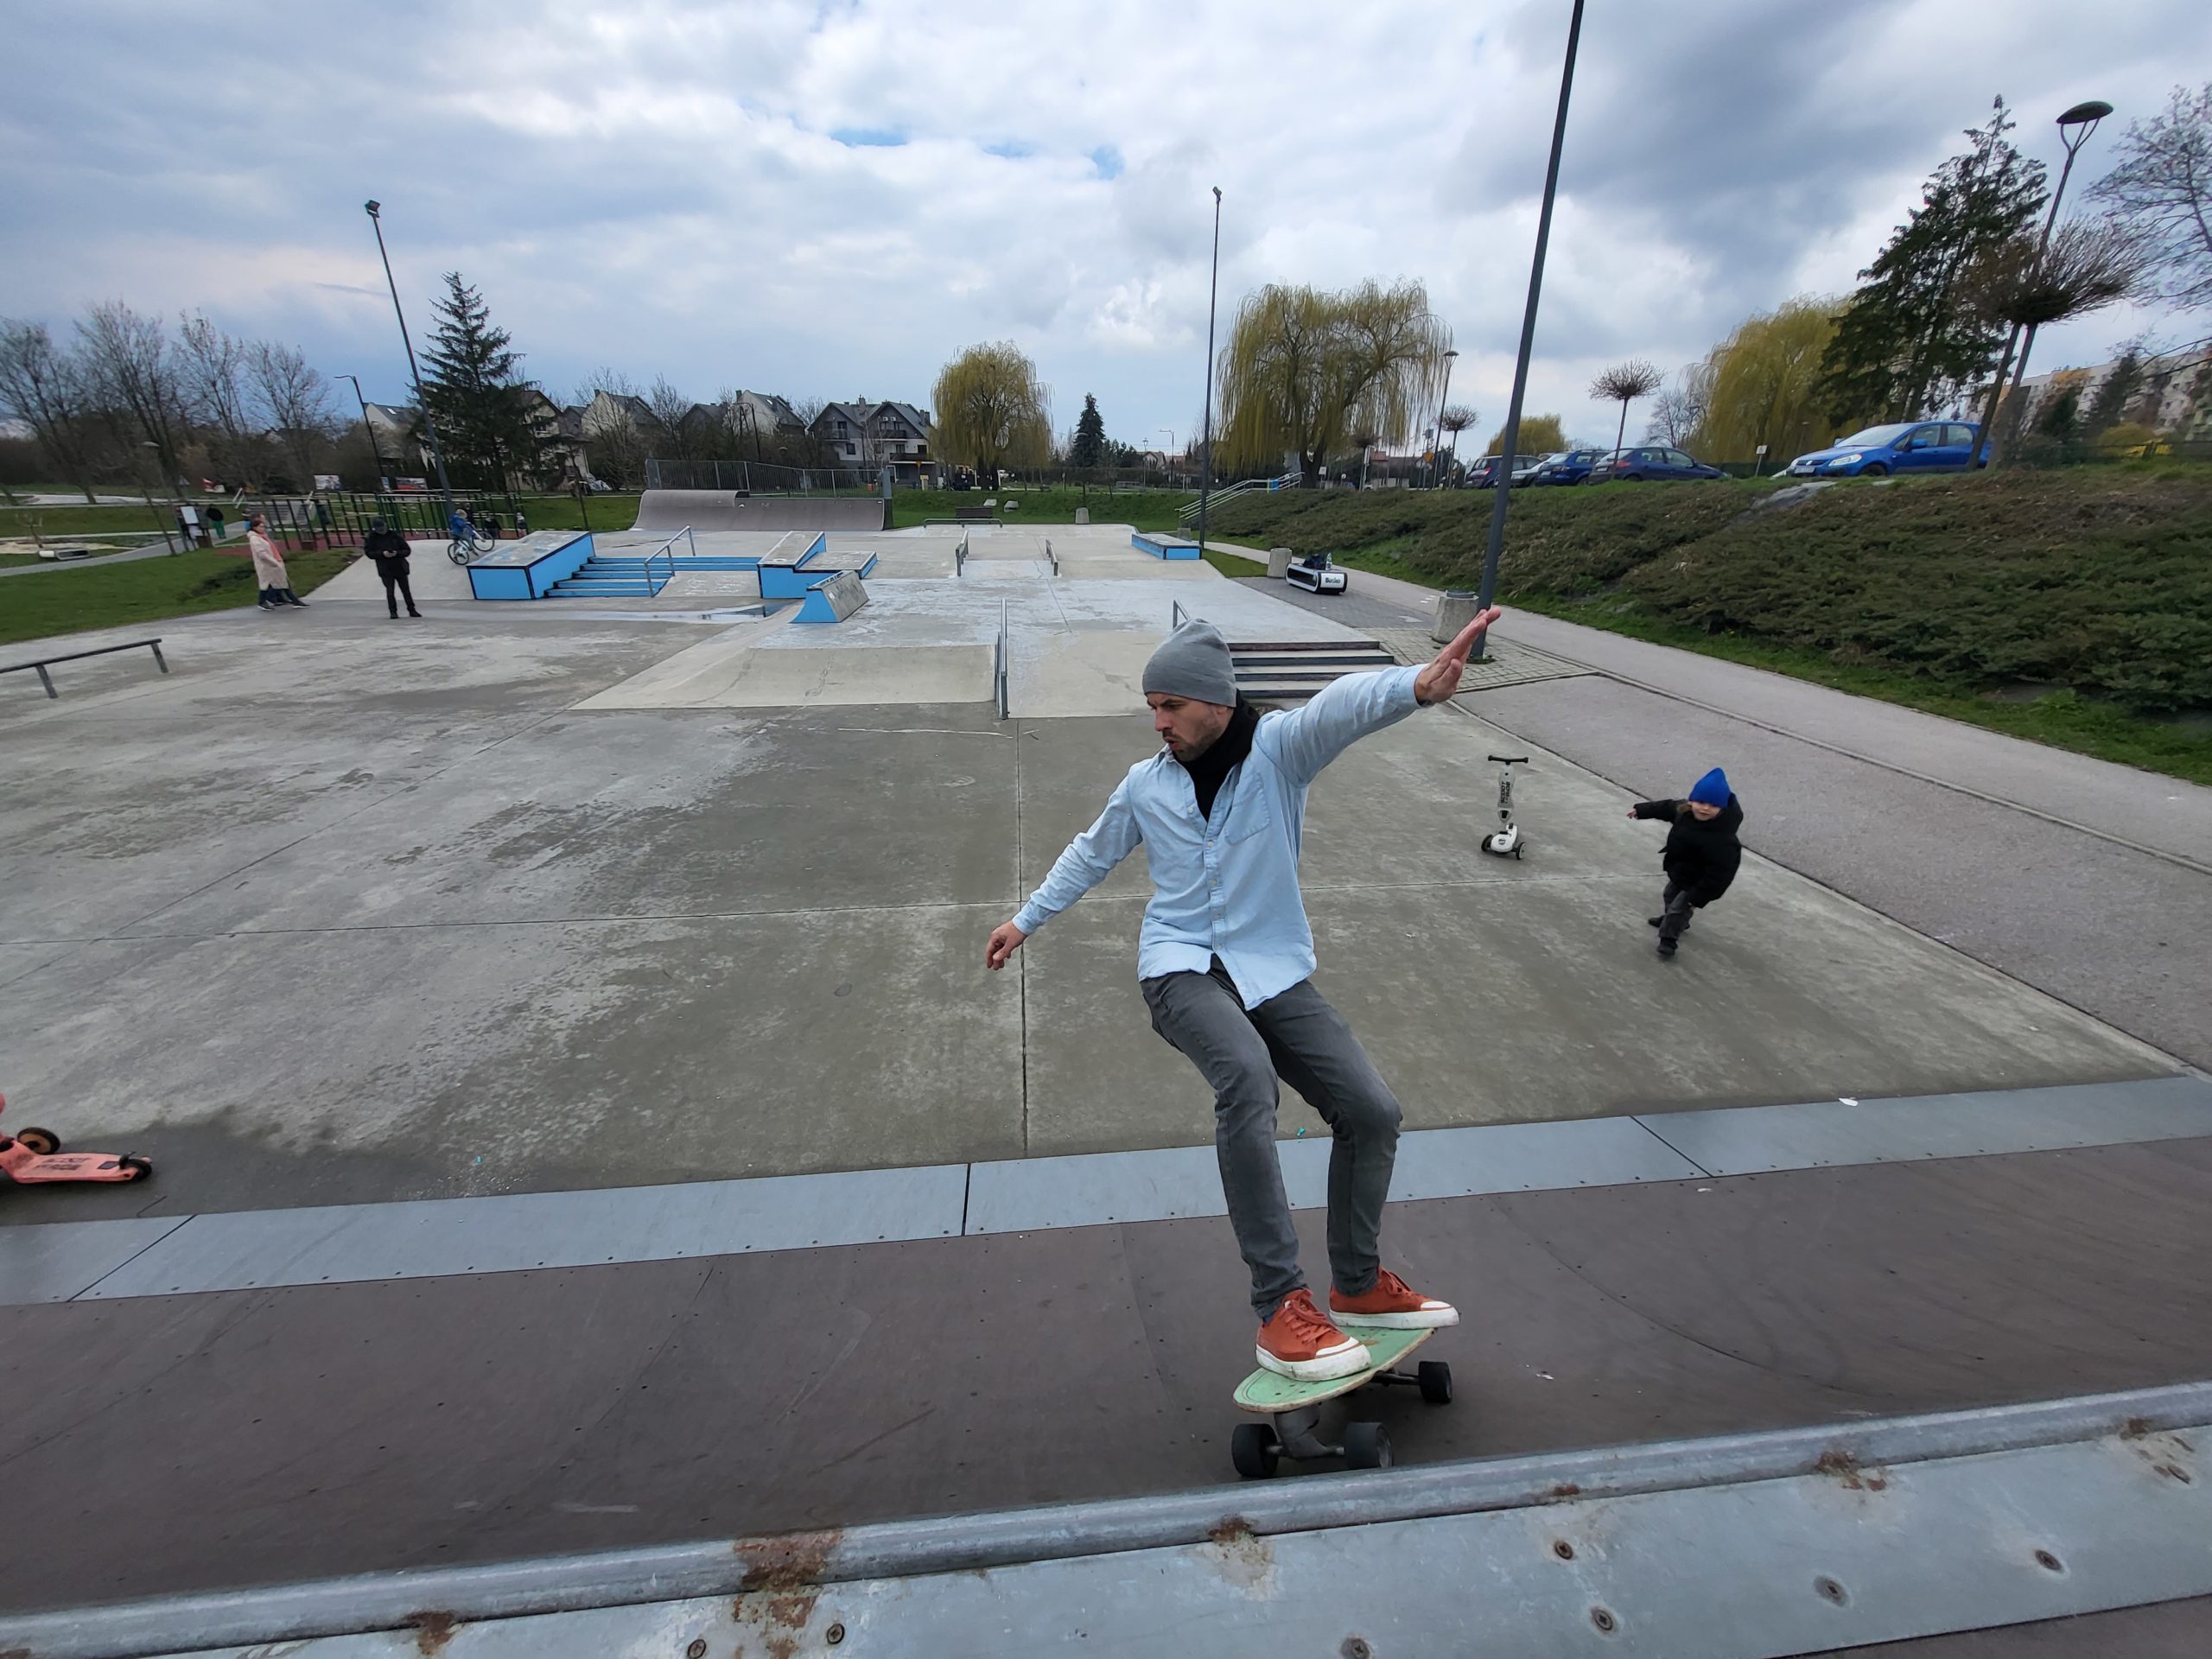 Skatepark: Busko Zdrój - widok z góry quater pipe